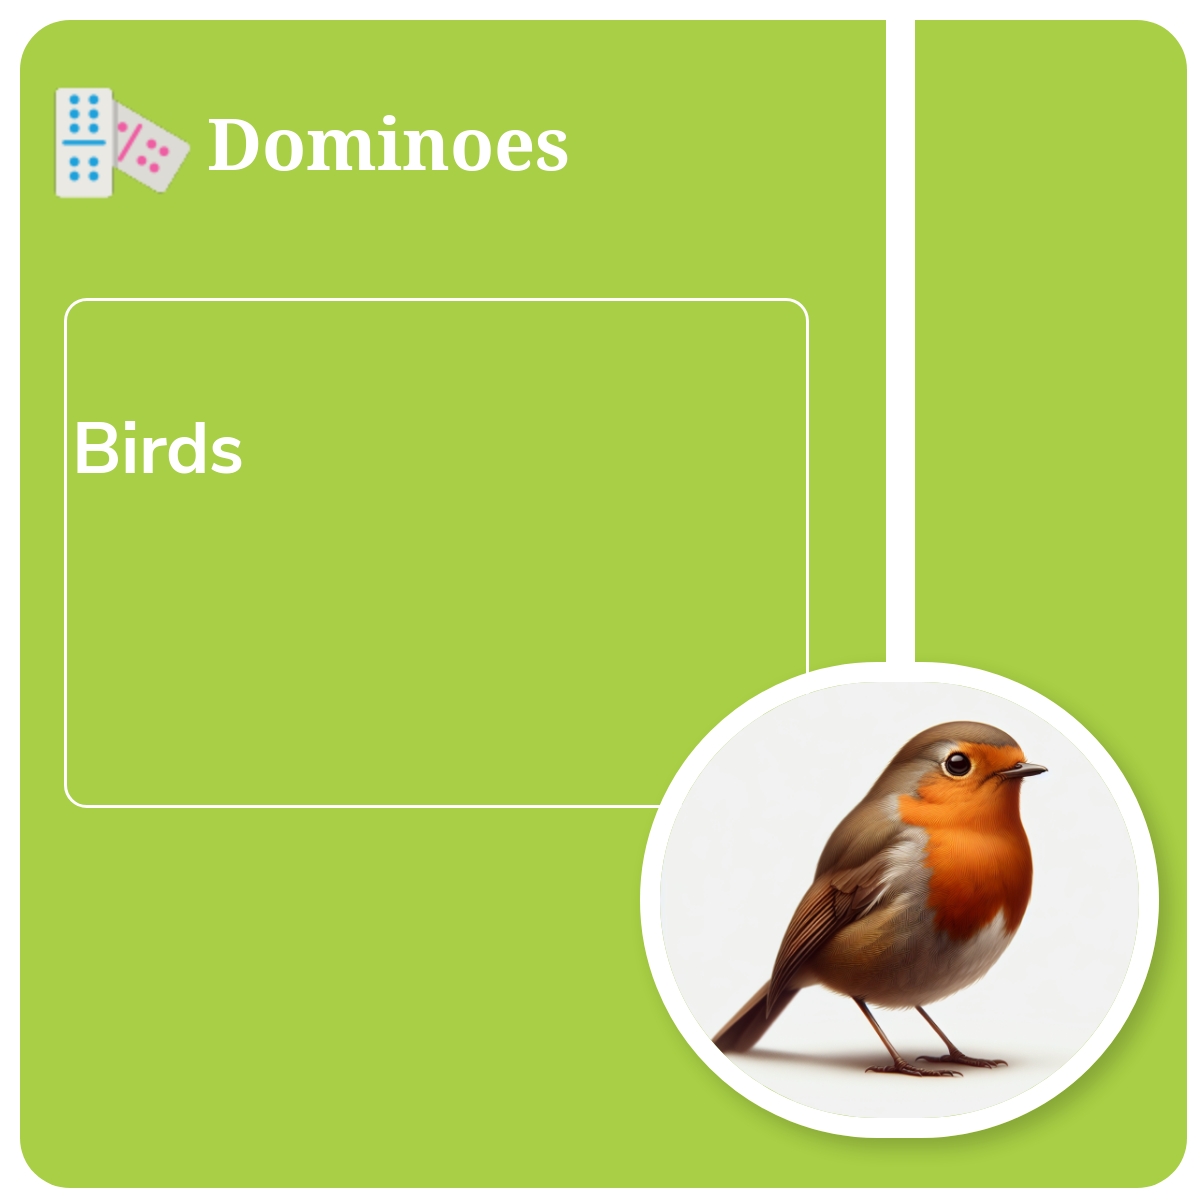 Dominoes - Set 1: Birds